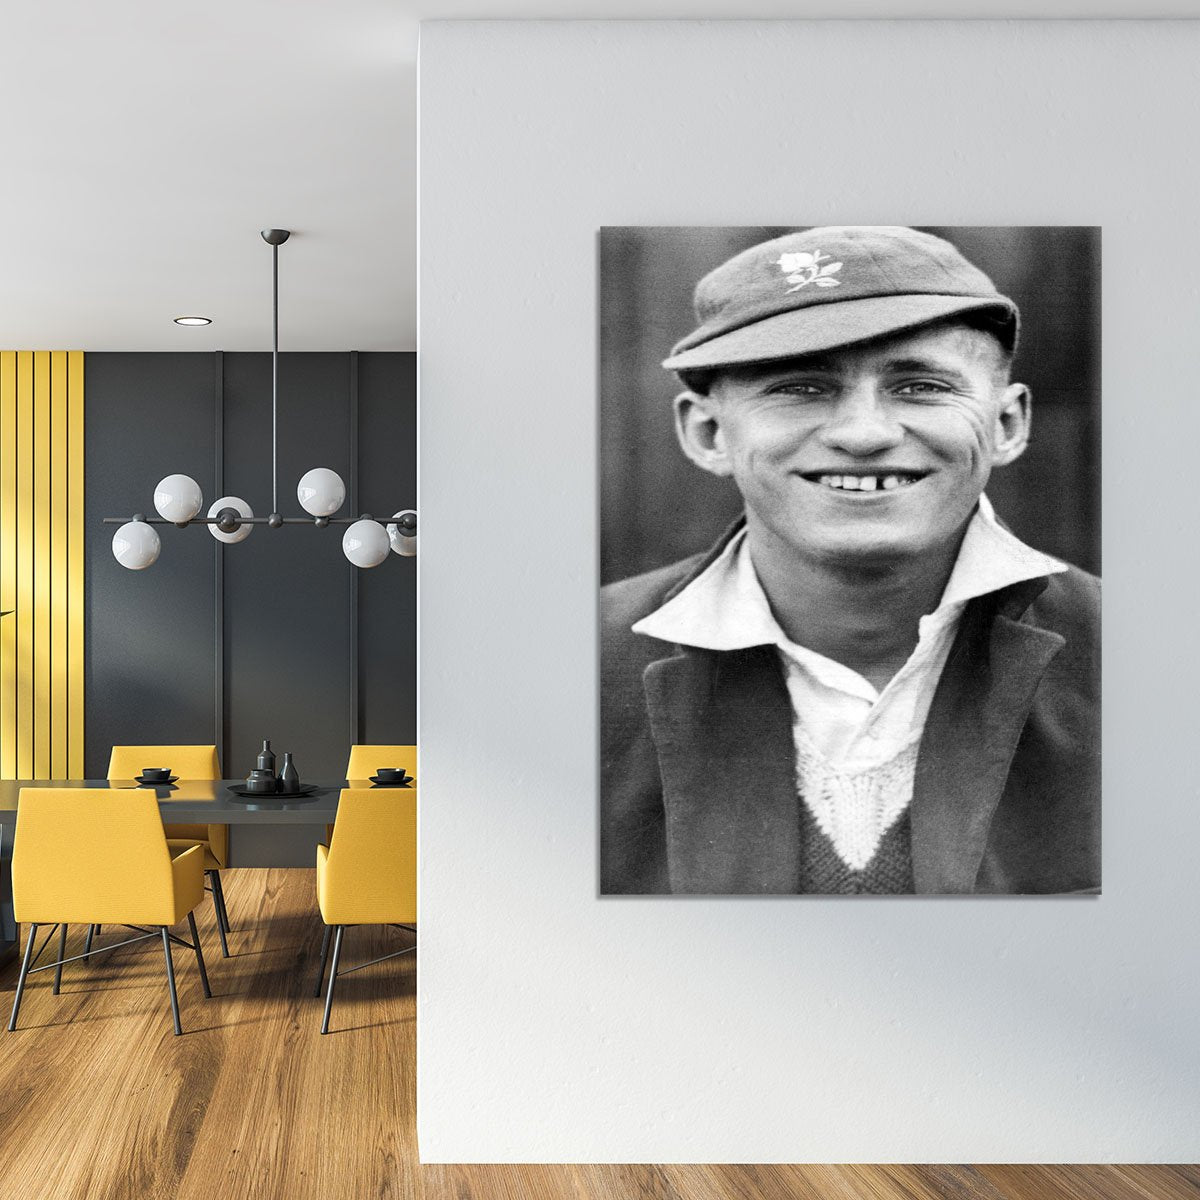 Len Hutton cricketer Canvas Print or Poster